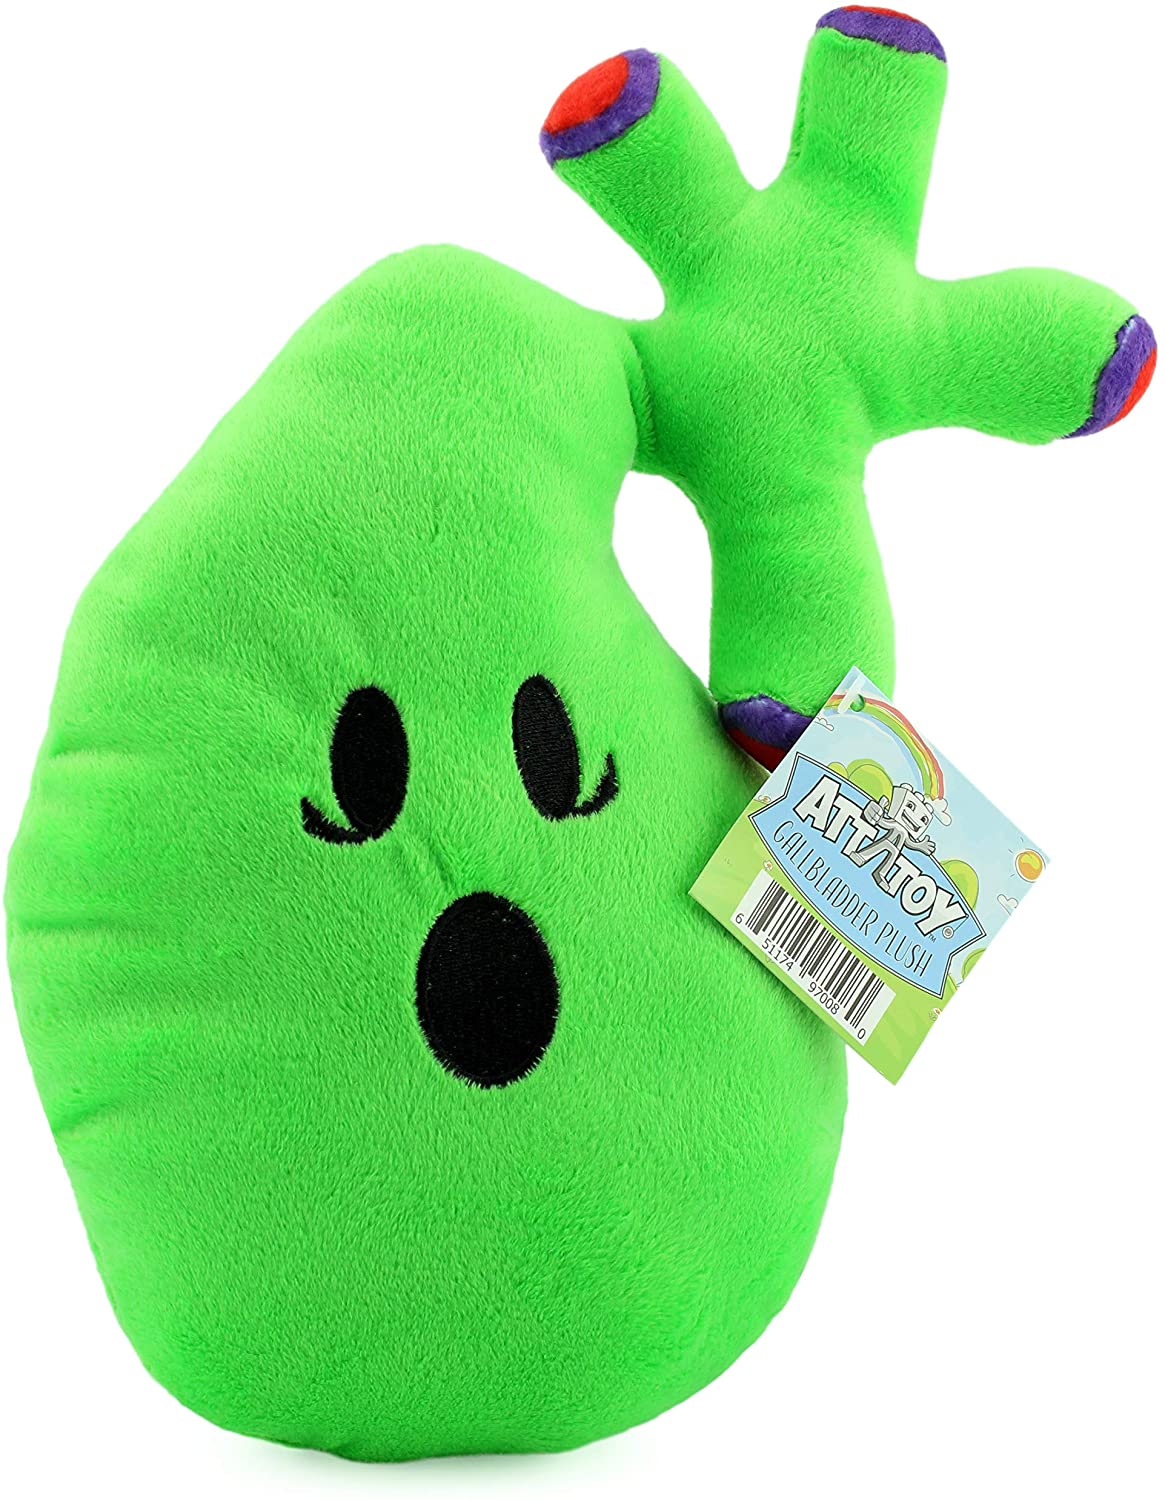 Gallbladder Plush, Body Organ Stuffed Toy